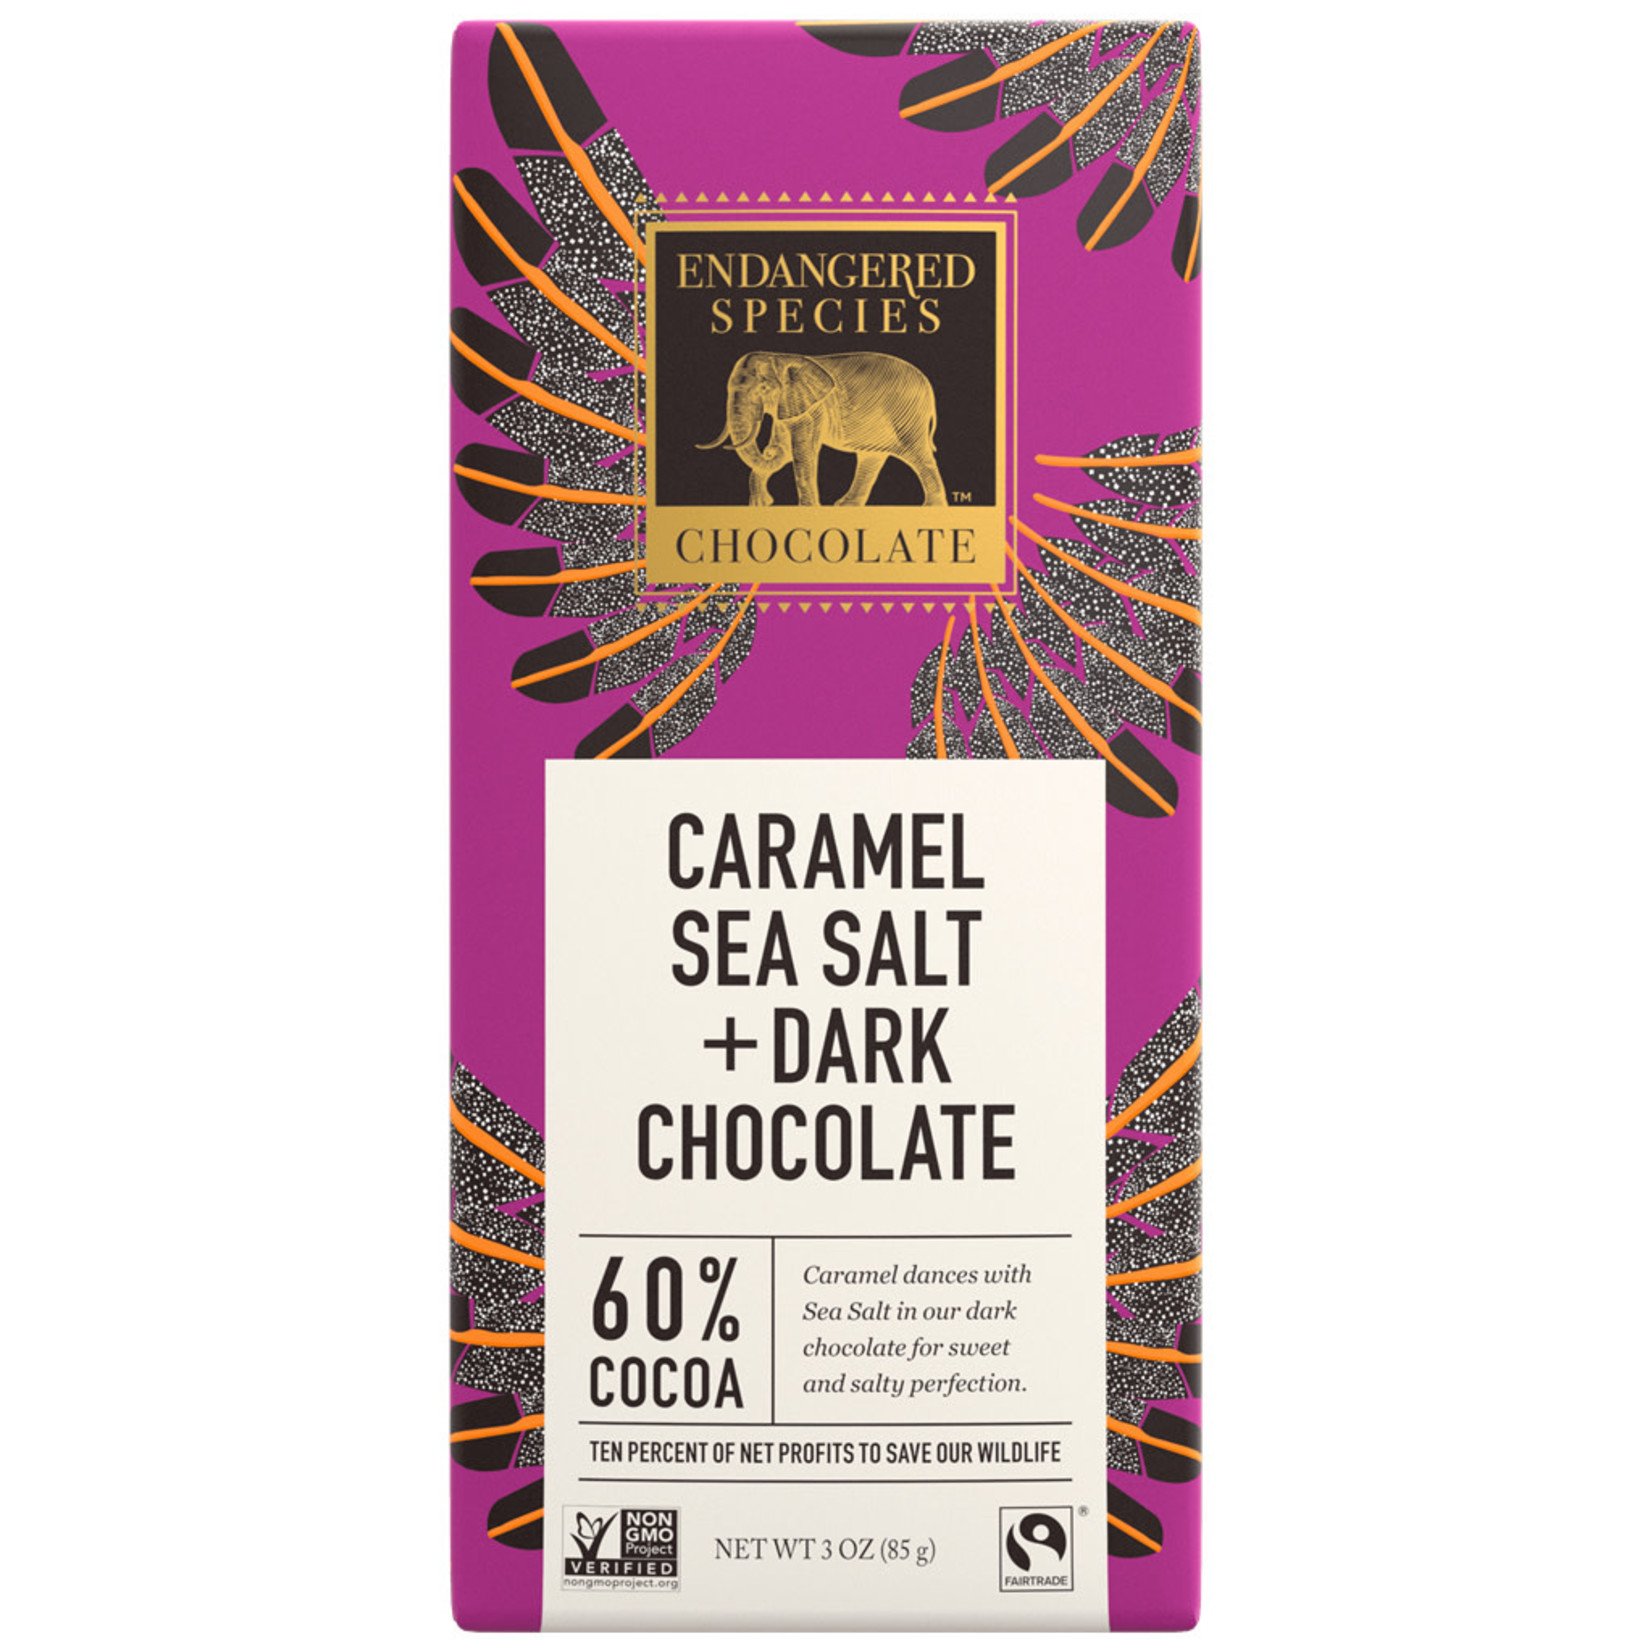 Endangered Species Endangered Species - Dark Chocolate Bar, Caramel & Sea Salt Eagle